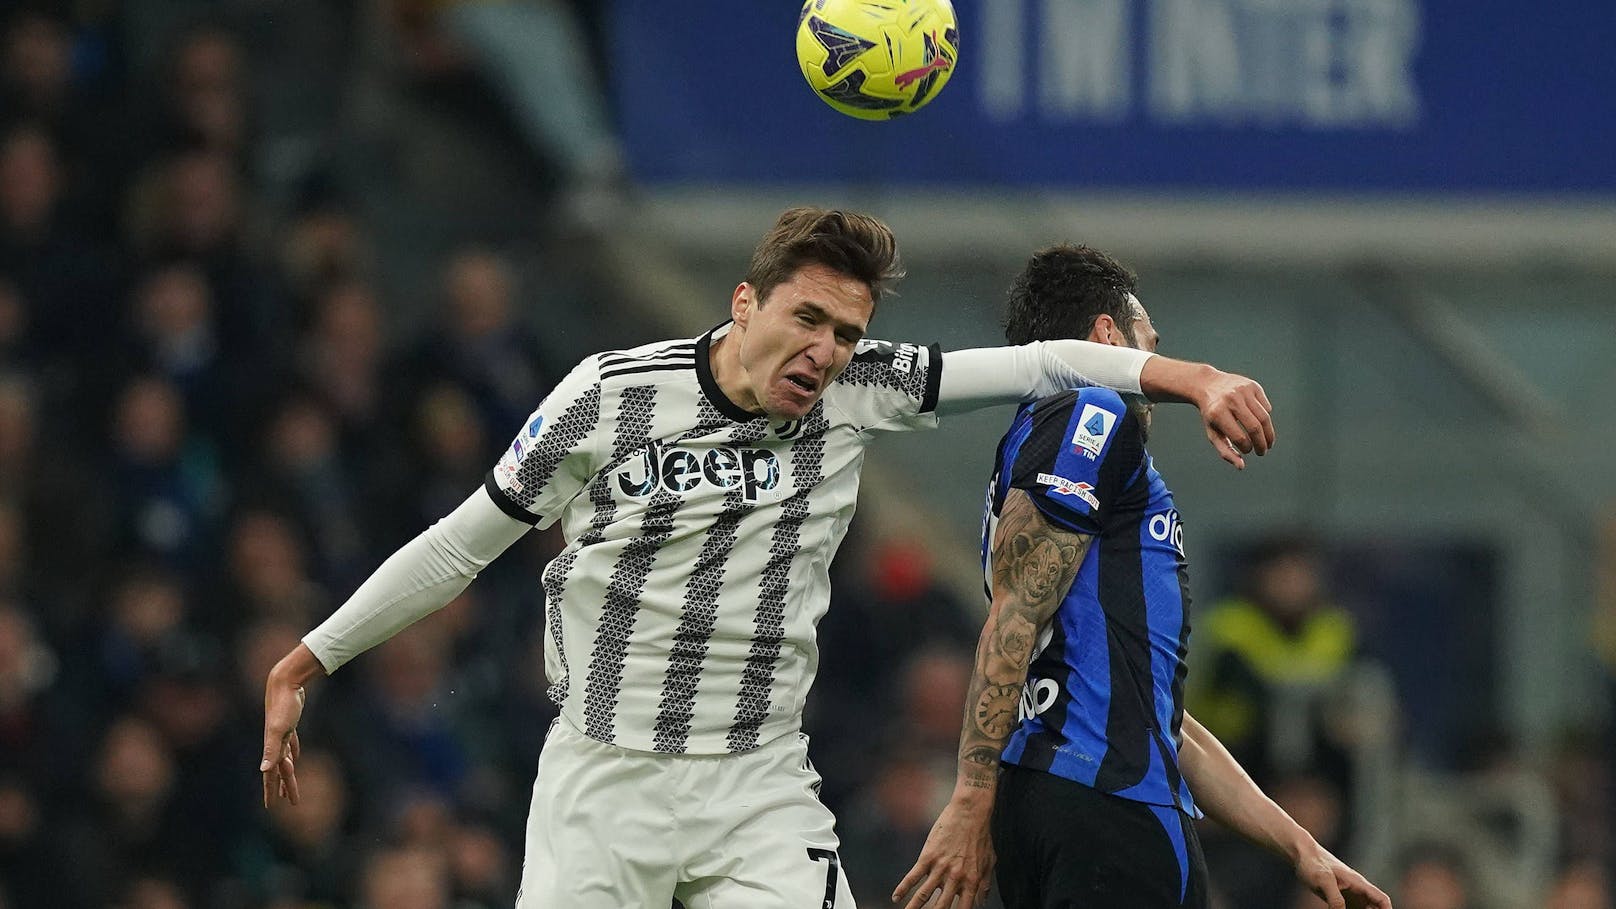 Juventus Turin bezwang Inter mit 1:0.